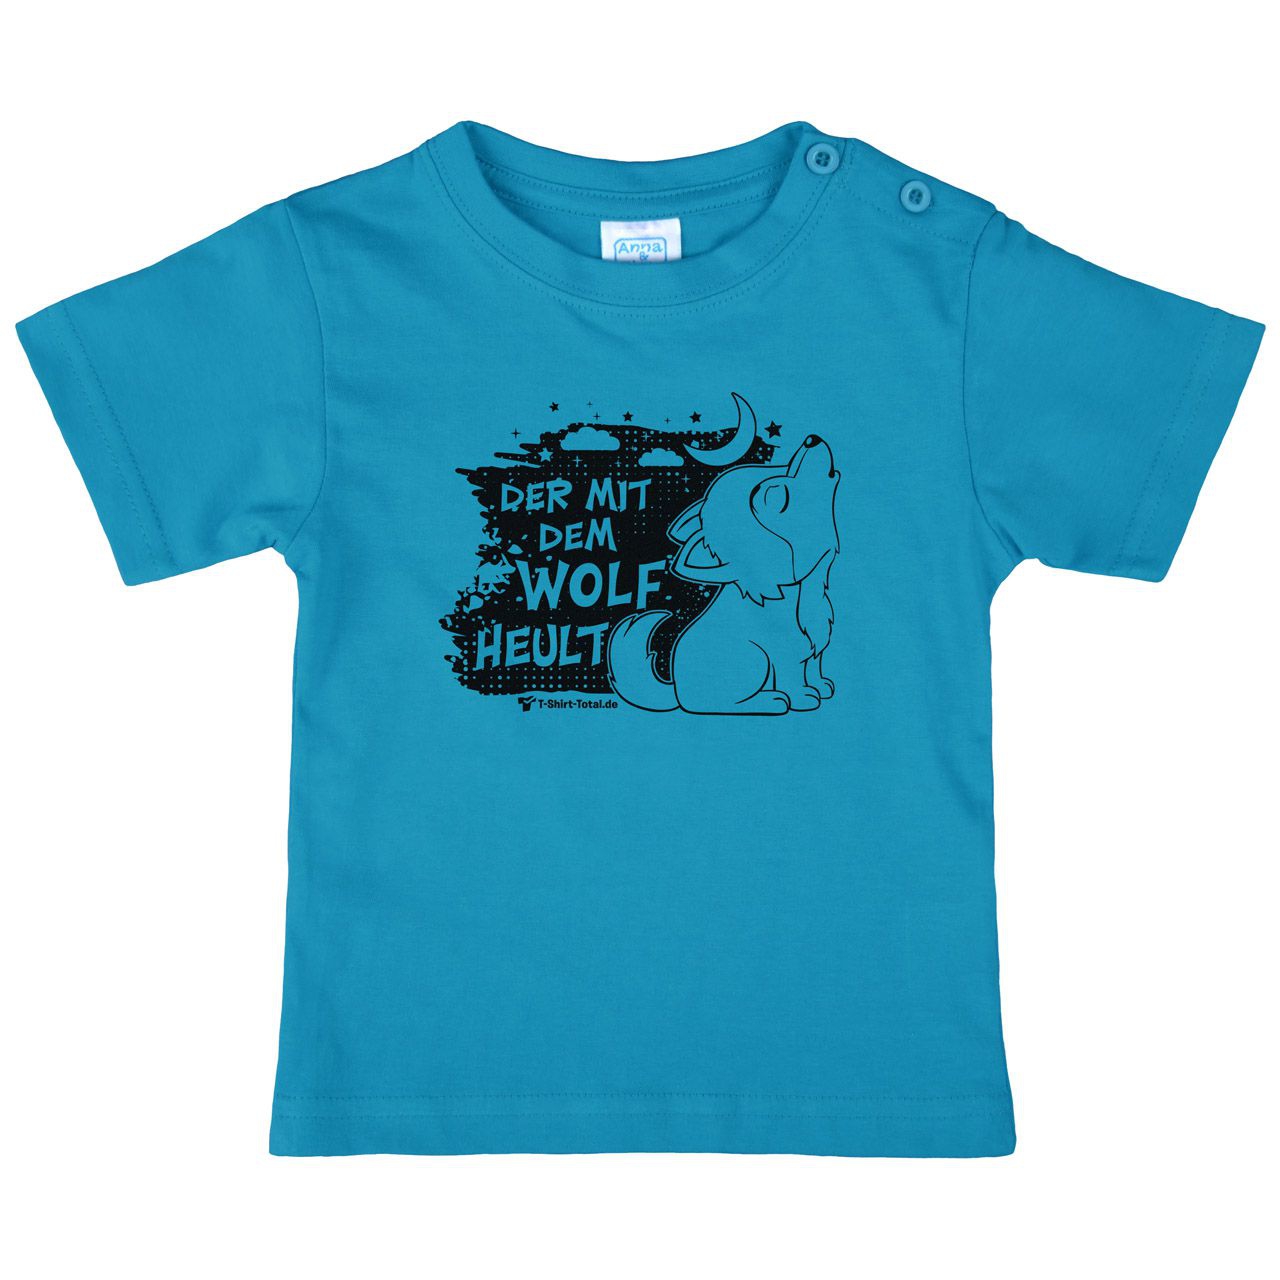 Der mit dem Wolf Kinder T-Shirt türkis 80 / 86